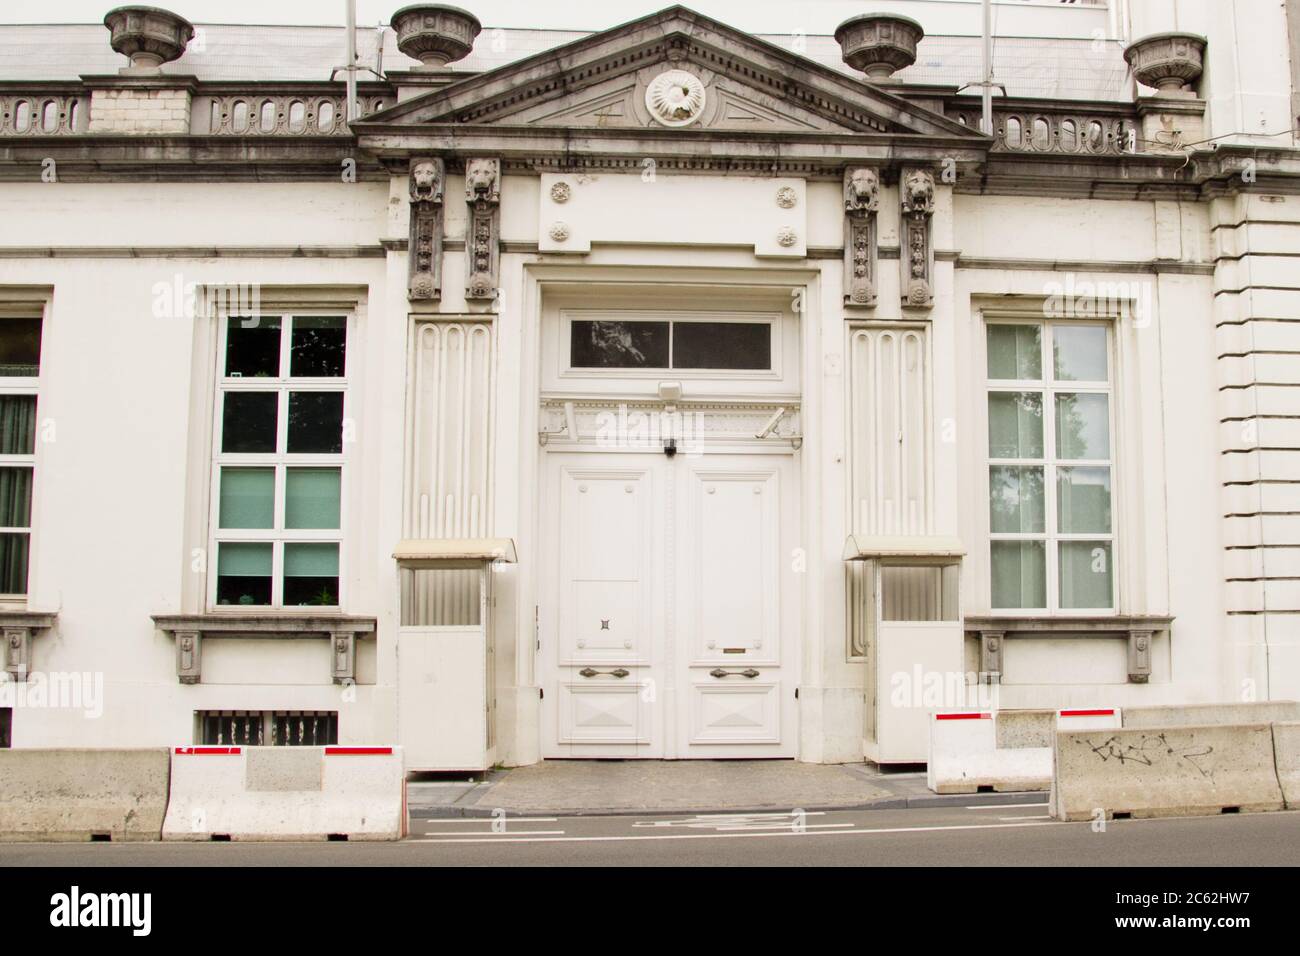 16 Rue de la Loi in Brüssel. Bundesregierungsgebäude.das Gebäude befindet sich im neoklassizistischen Stil Viertel vom Ende des 18. Jahrhunderts wh Stockfoto